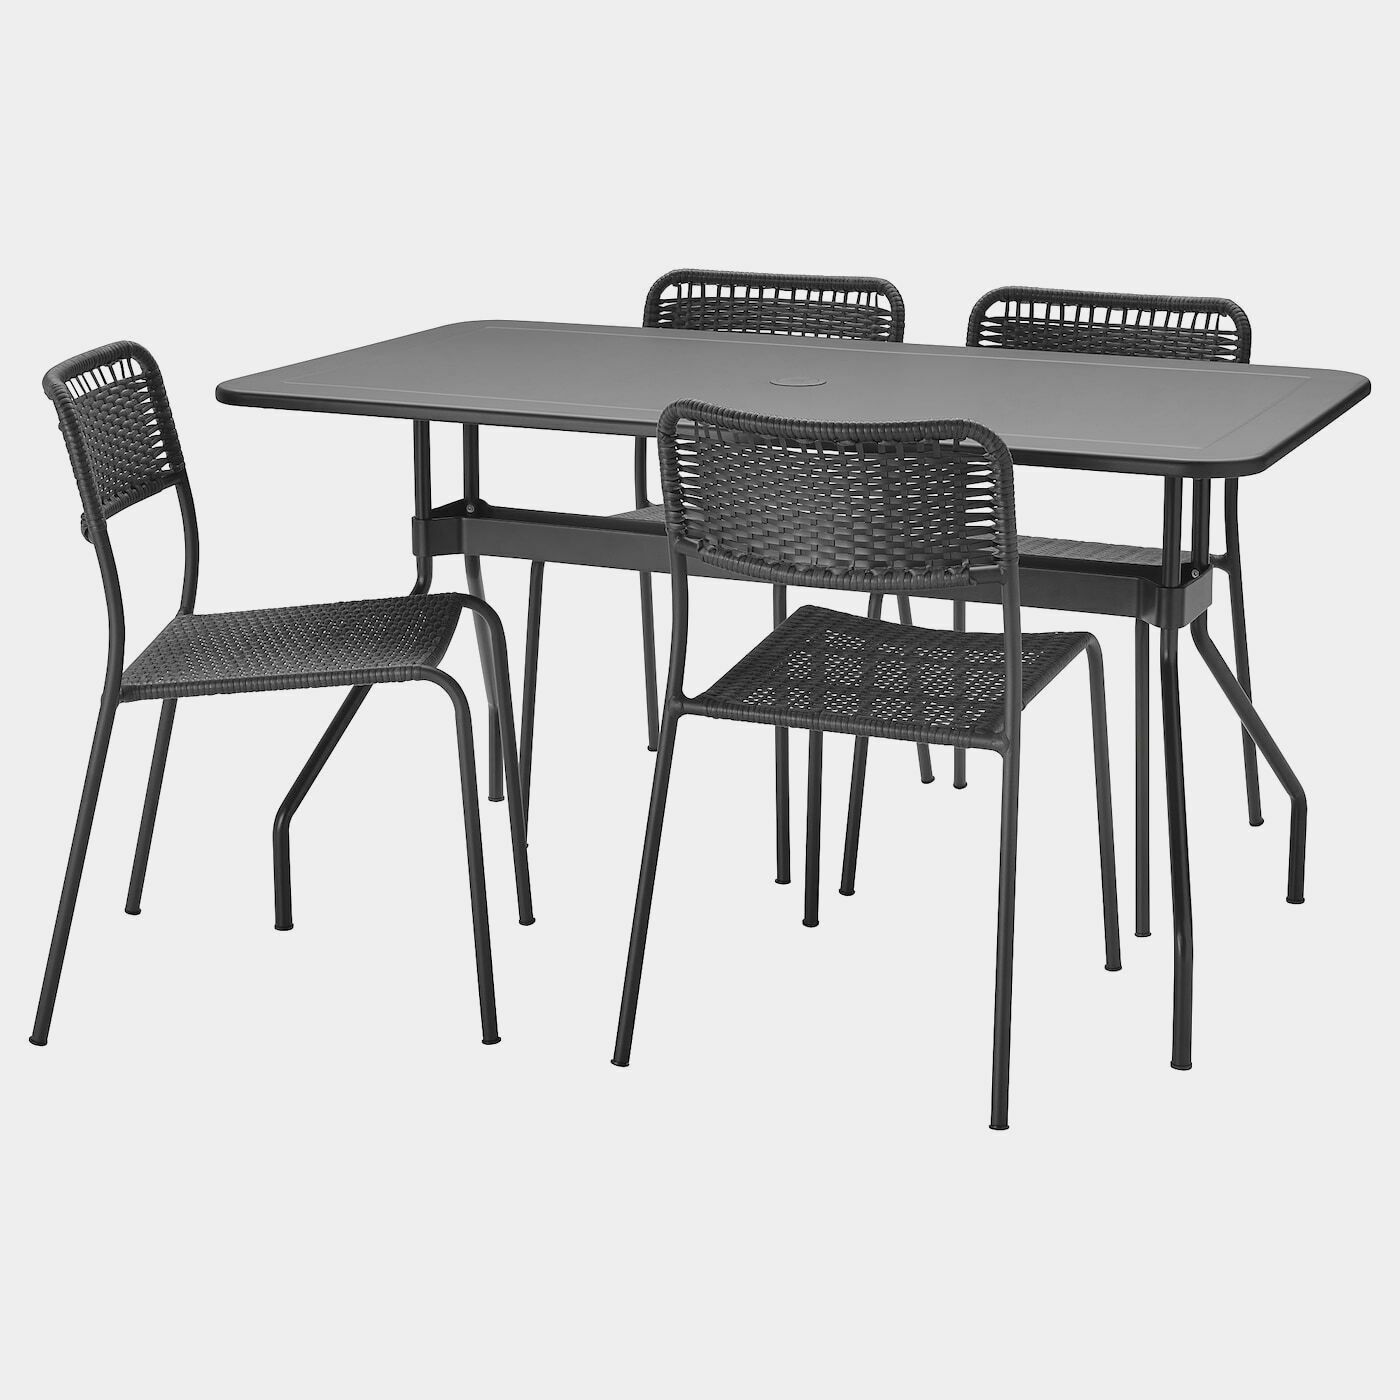 VIHOLMEN Tisch+4 Stühle/außen  -  - Möbel Ideen für dein Zuhause von Home Trends. Möbel Trends von Social Media Influencer für dein Skandi Zuhause.